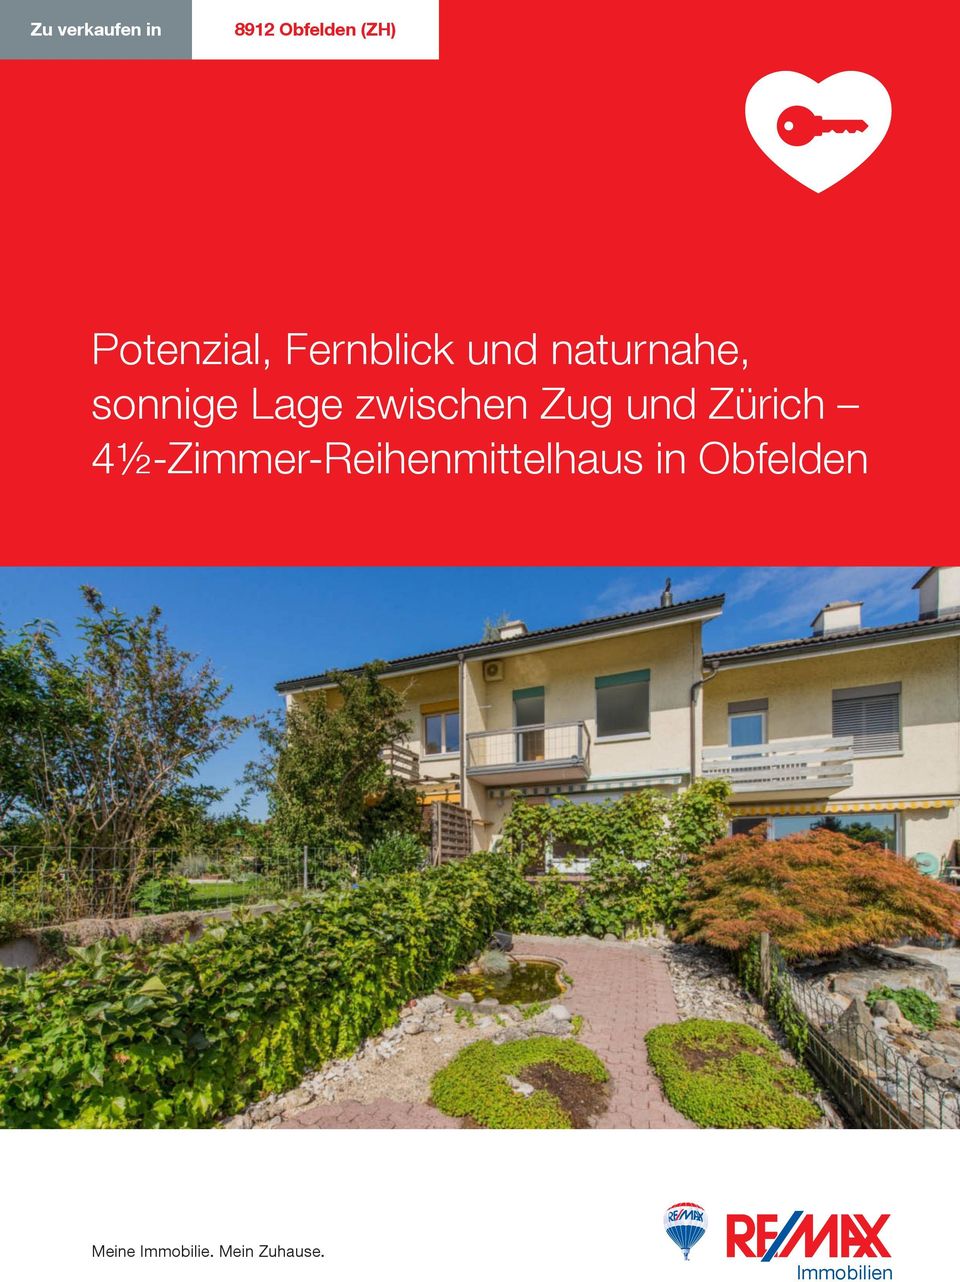 Zug und Zürich 4½-Zimmer-Reihenmittelhaus in